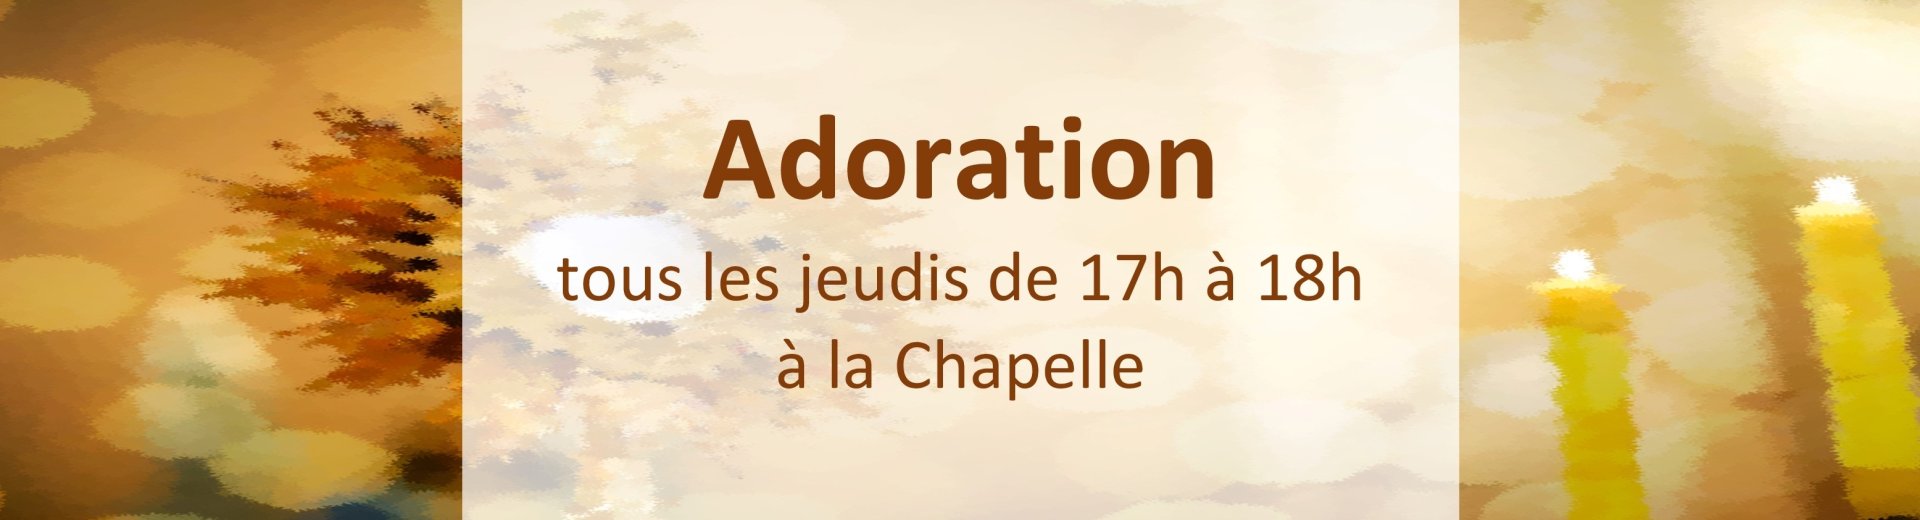 adoration-660e9e89bb243405765843.jpg